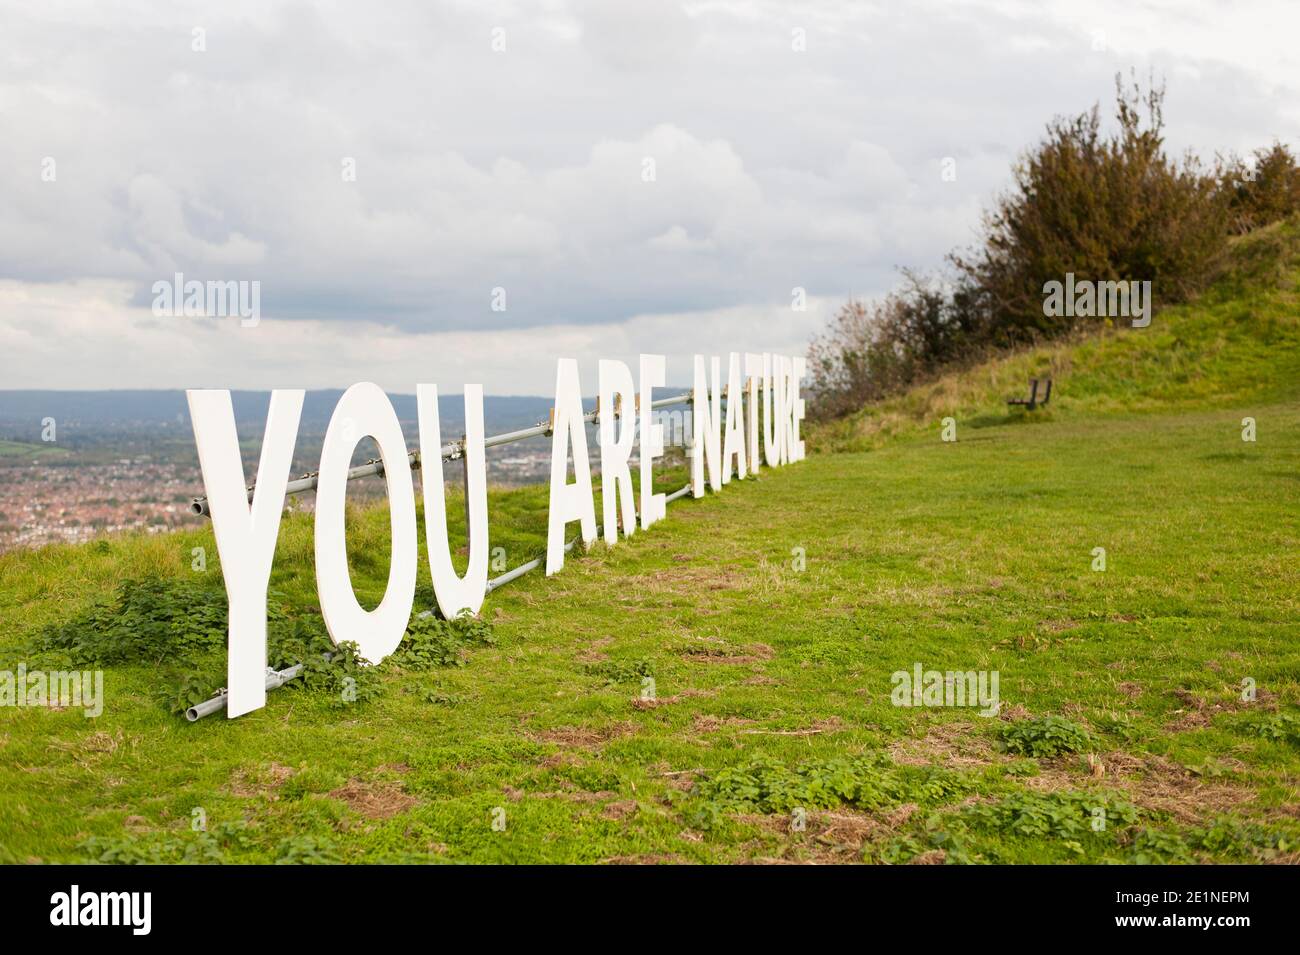 "Usted es la naturaleza" cerca de la cima de Robinswood Hill, Gloucester. Una de las instalaciones de arte de "la Tierra y el Cielo" se encuentra en toda la ciudad en 2020 Foto de stock